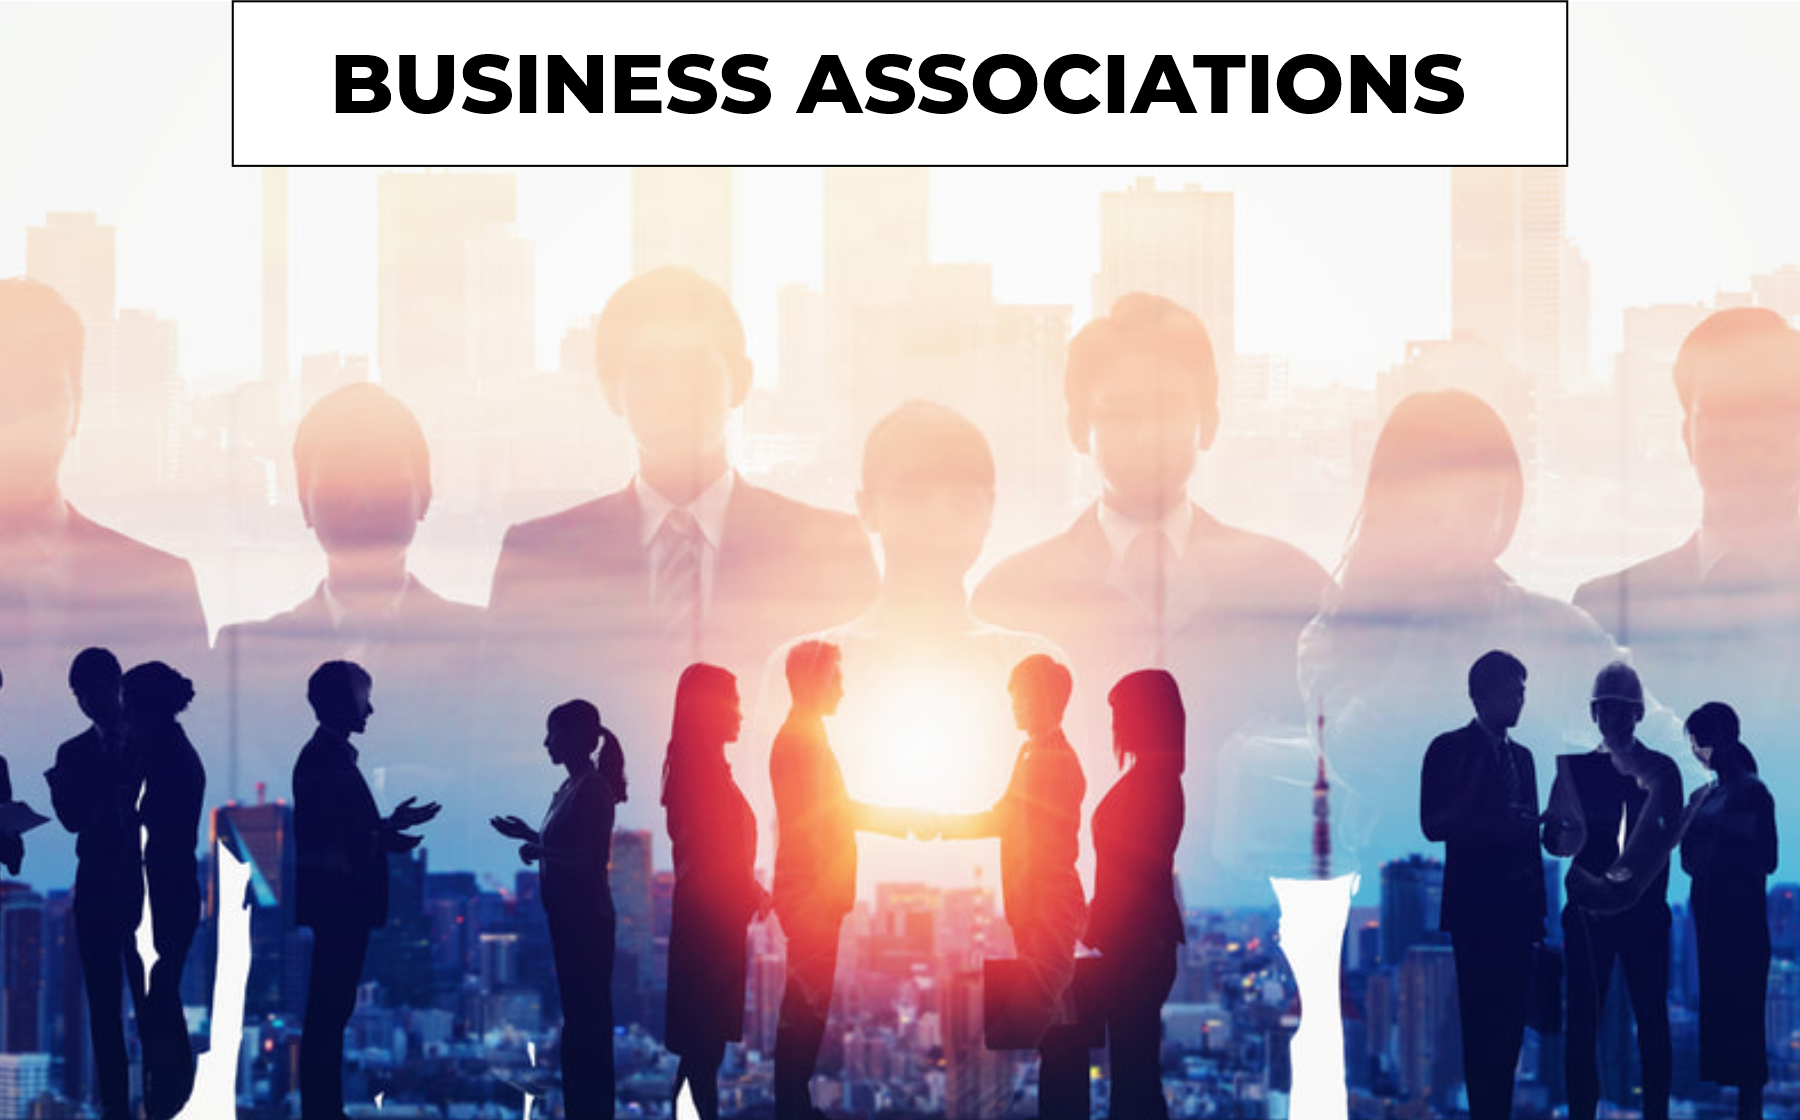 Business association